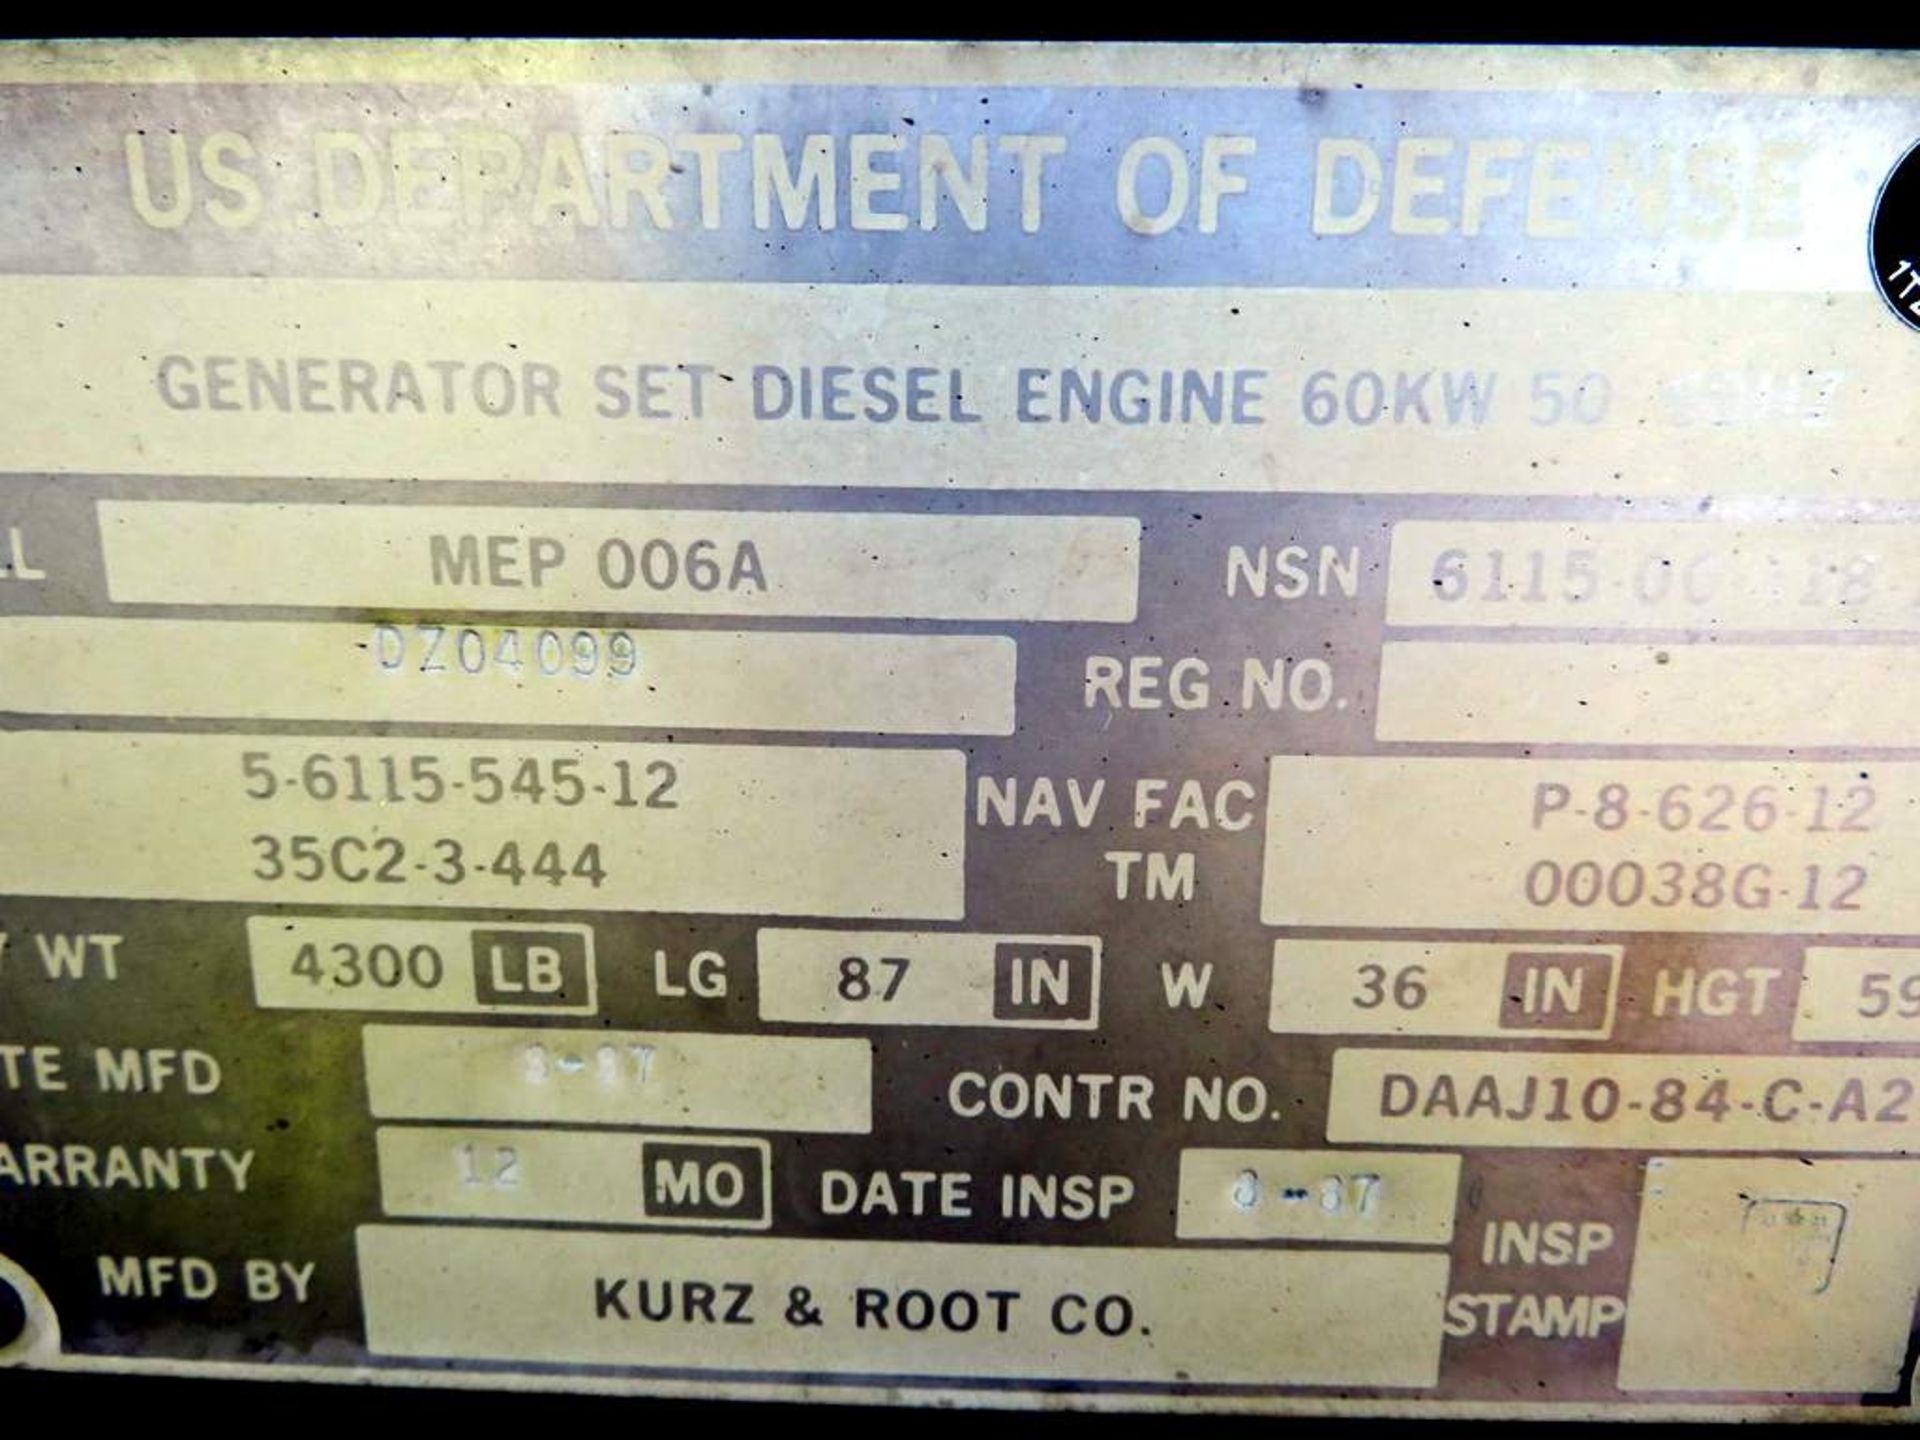 Skid Mounted 60KW Diesel Gen Set. - Image 5 of 15